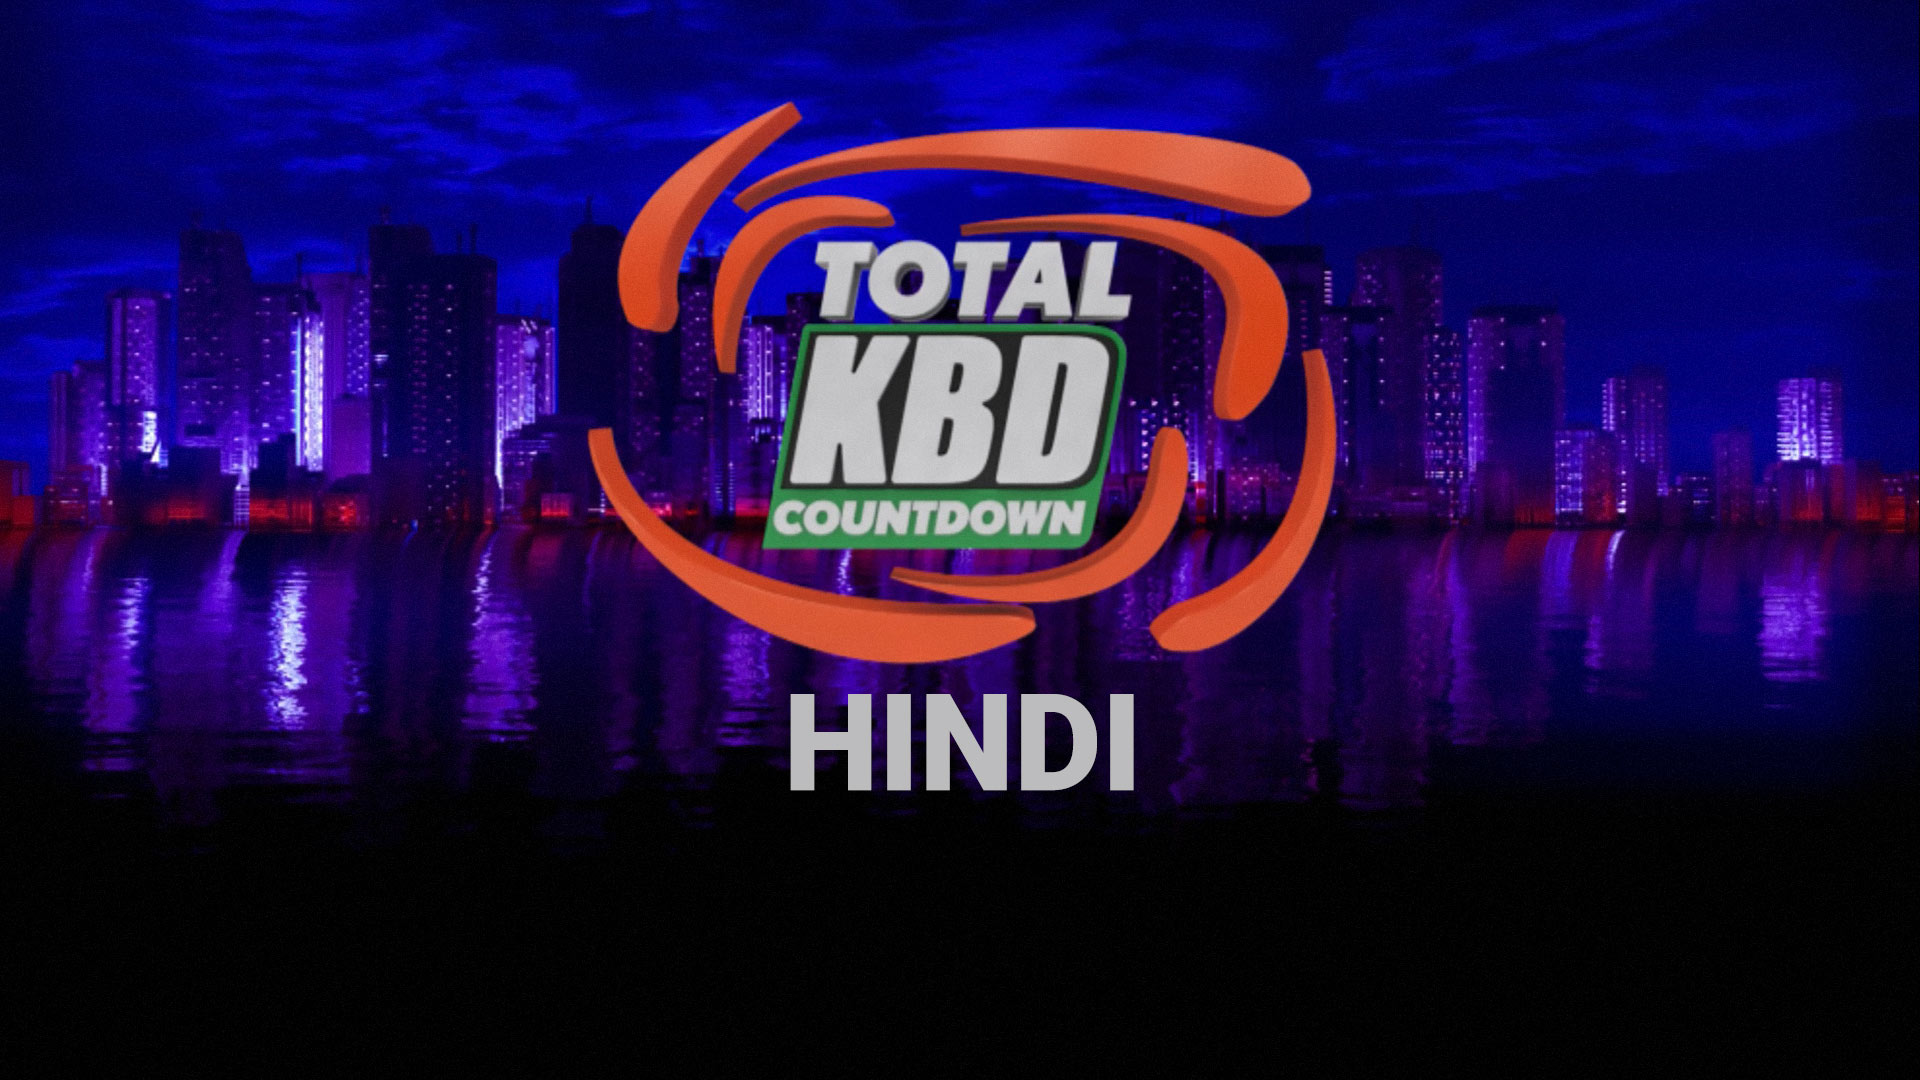 KBD Countdown 2019 Hindi